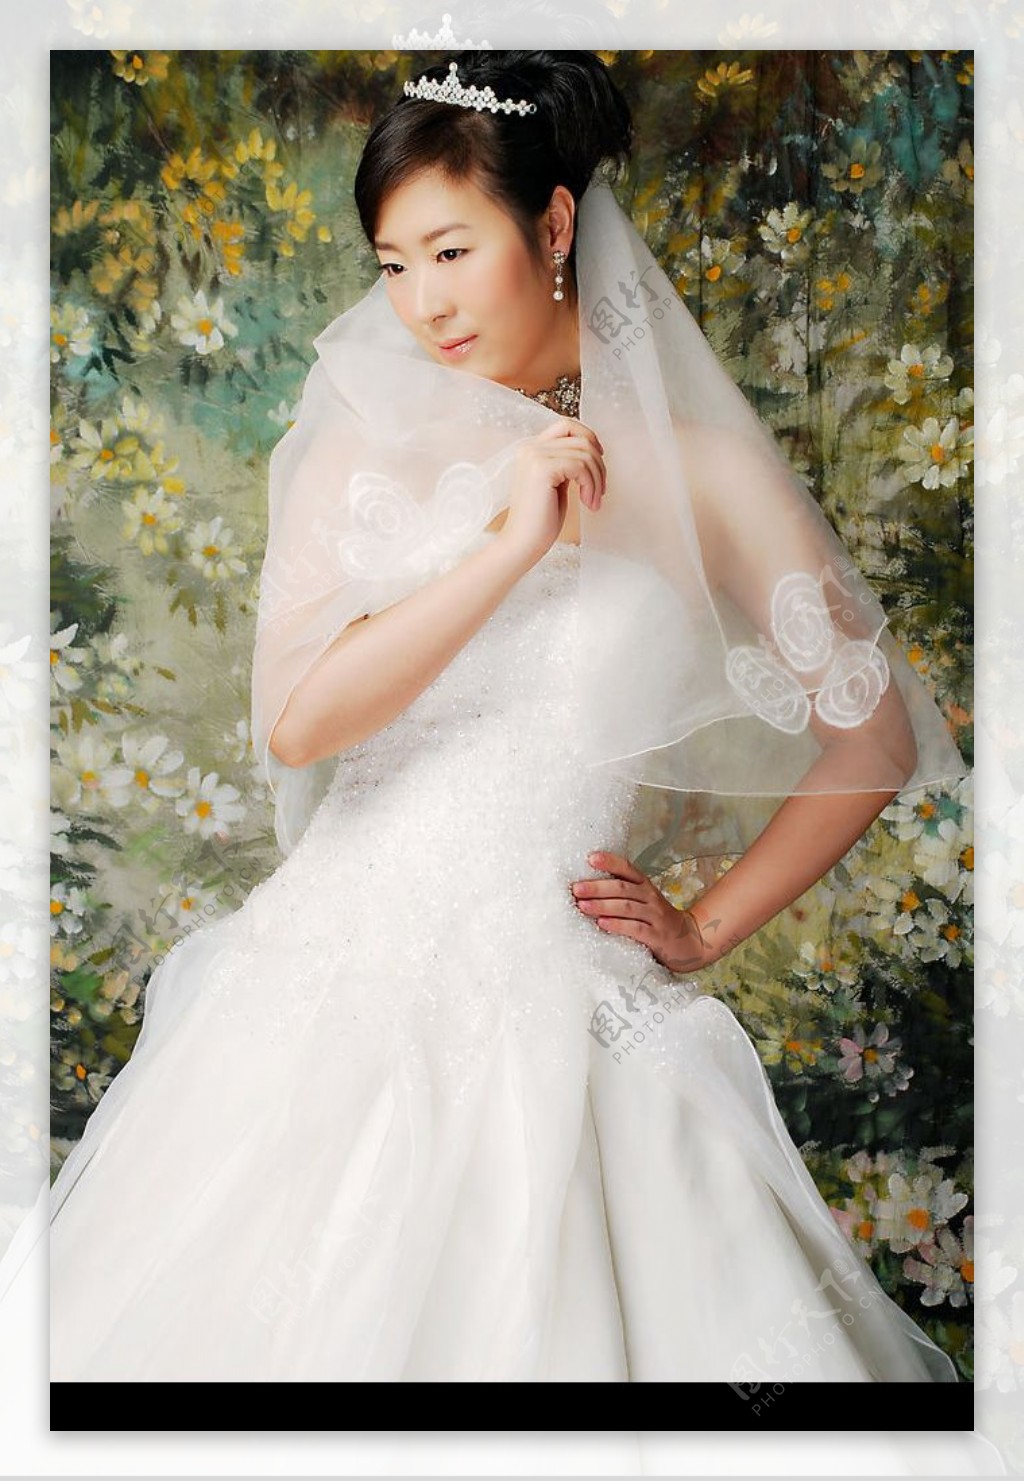 个性时尚婚纱美丽新娘图片